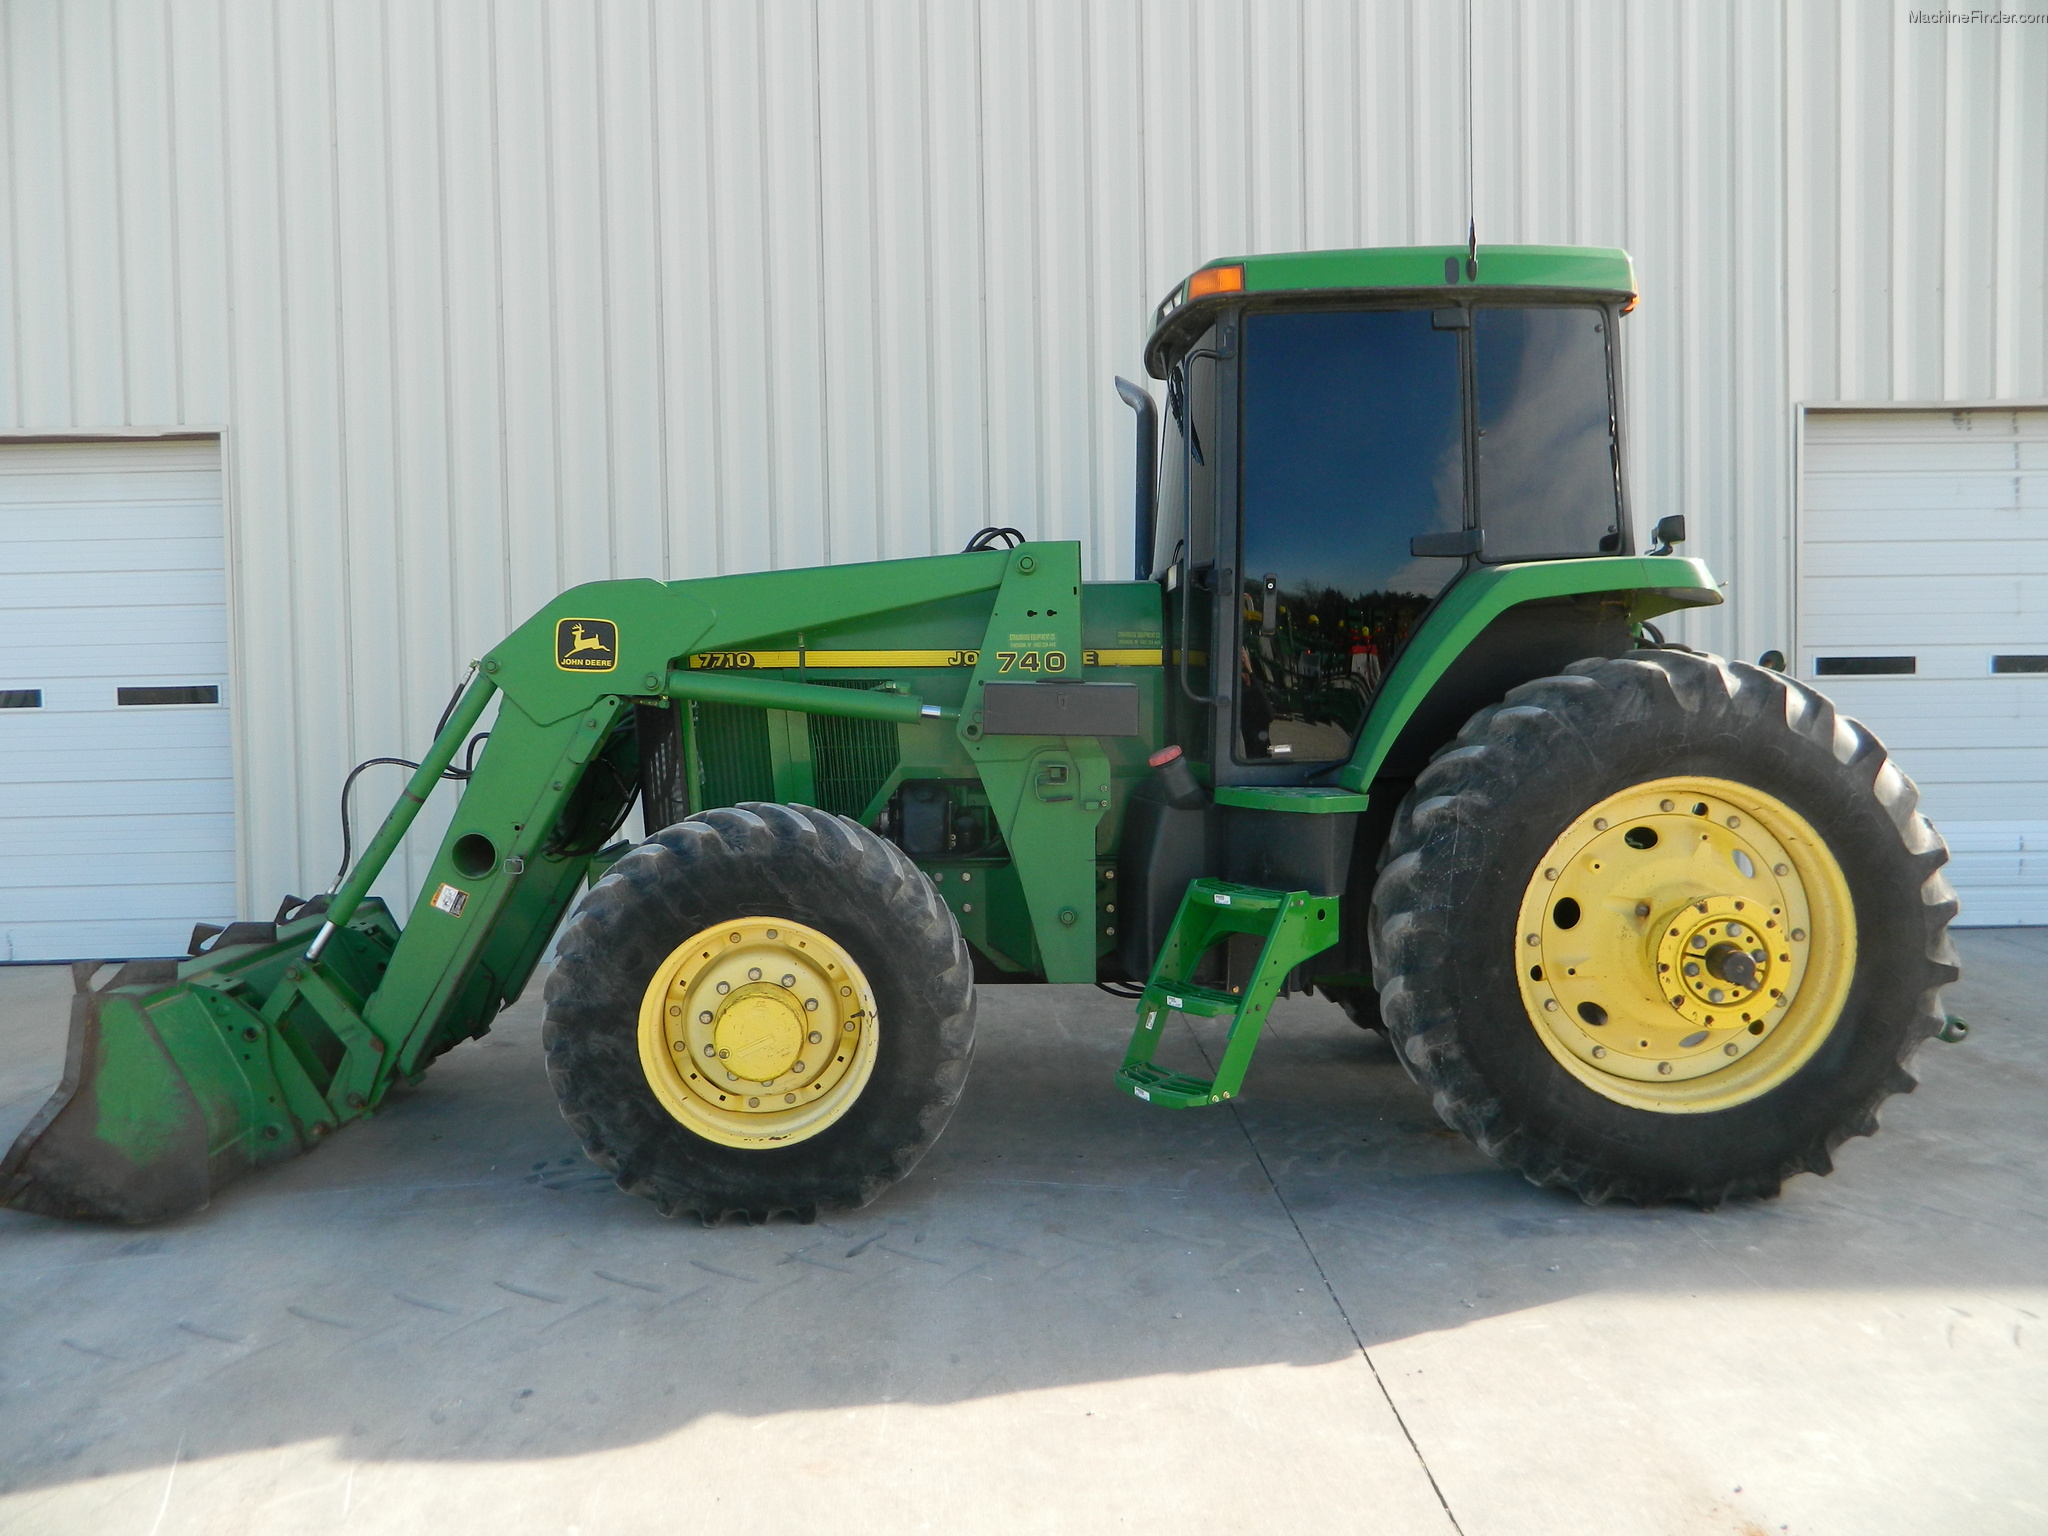 1998 John Deere 7710 Tractors - Row Crop (+100hp) - John Deere ...